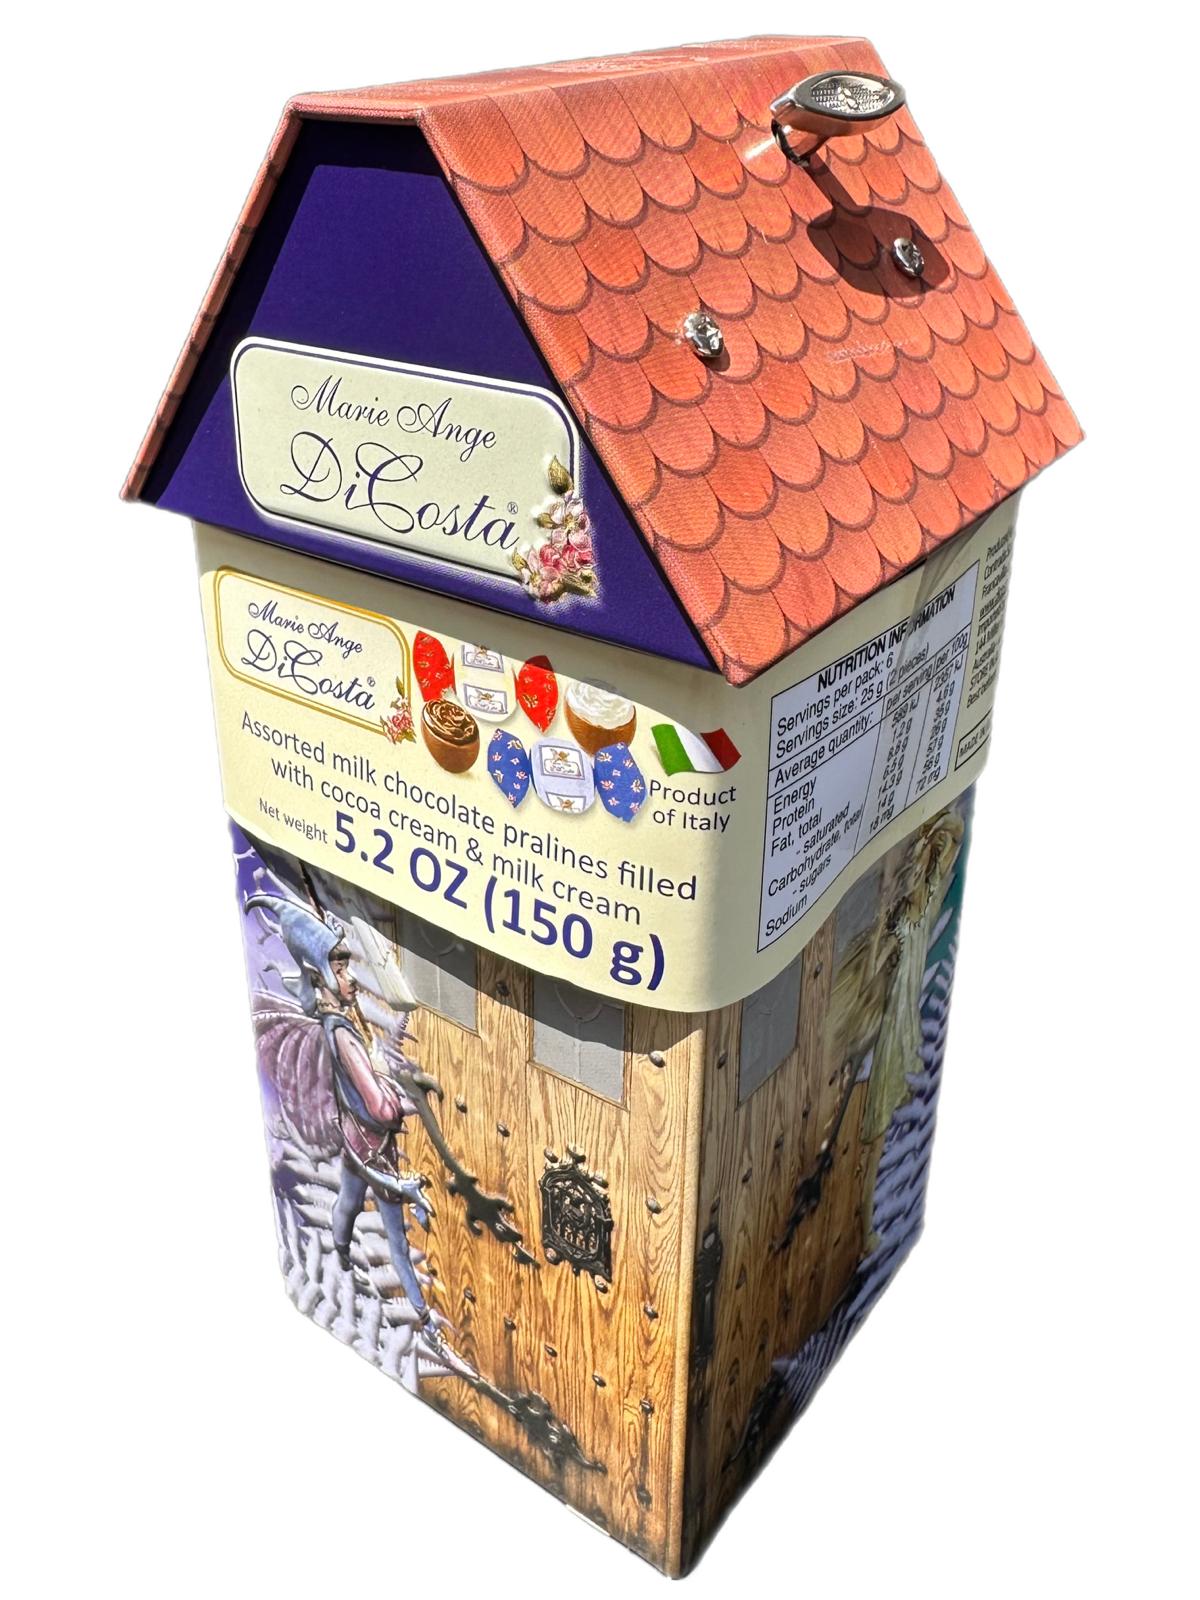 Marie Ange di Costa Italian Flower Fairy Music Box with Praline Chocolates--Casa degli Uccelli La Colpo 140g